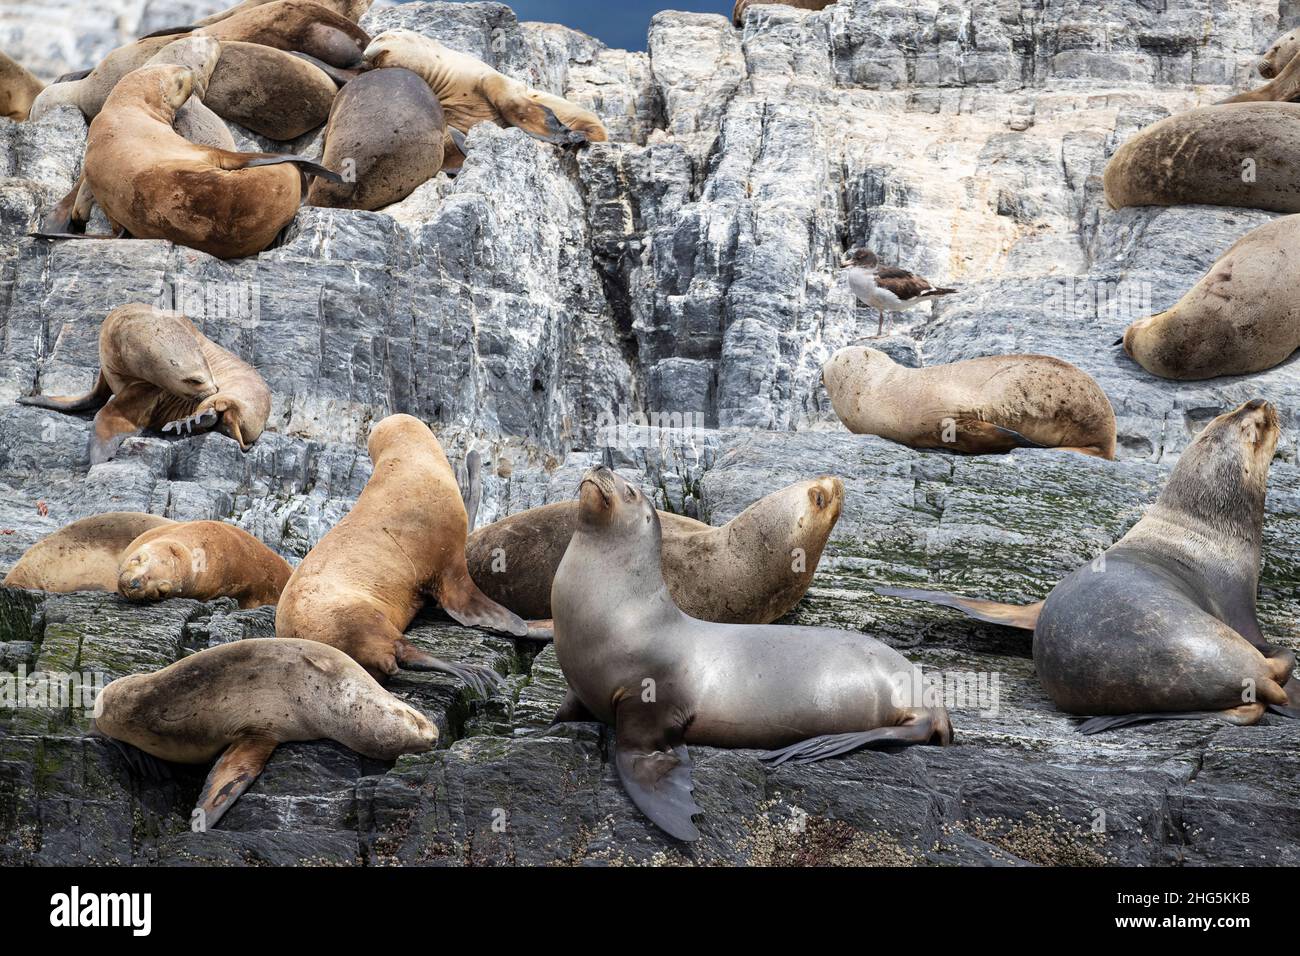 Des lions de mer d'Amérique du Sud, Otaria flavescens, femelles adultes, ont été transportées sur un petit îlot près d'Ushuaia, en Argentine. Banque D'Images